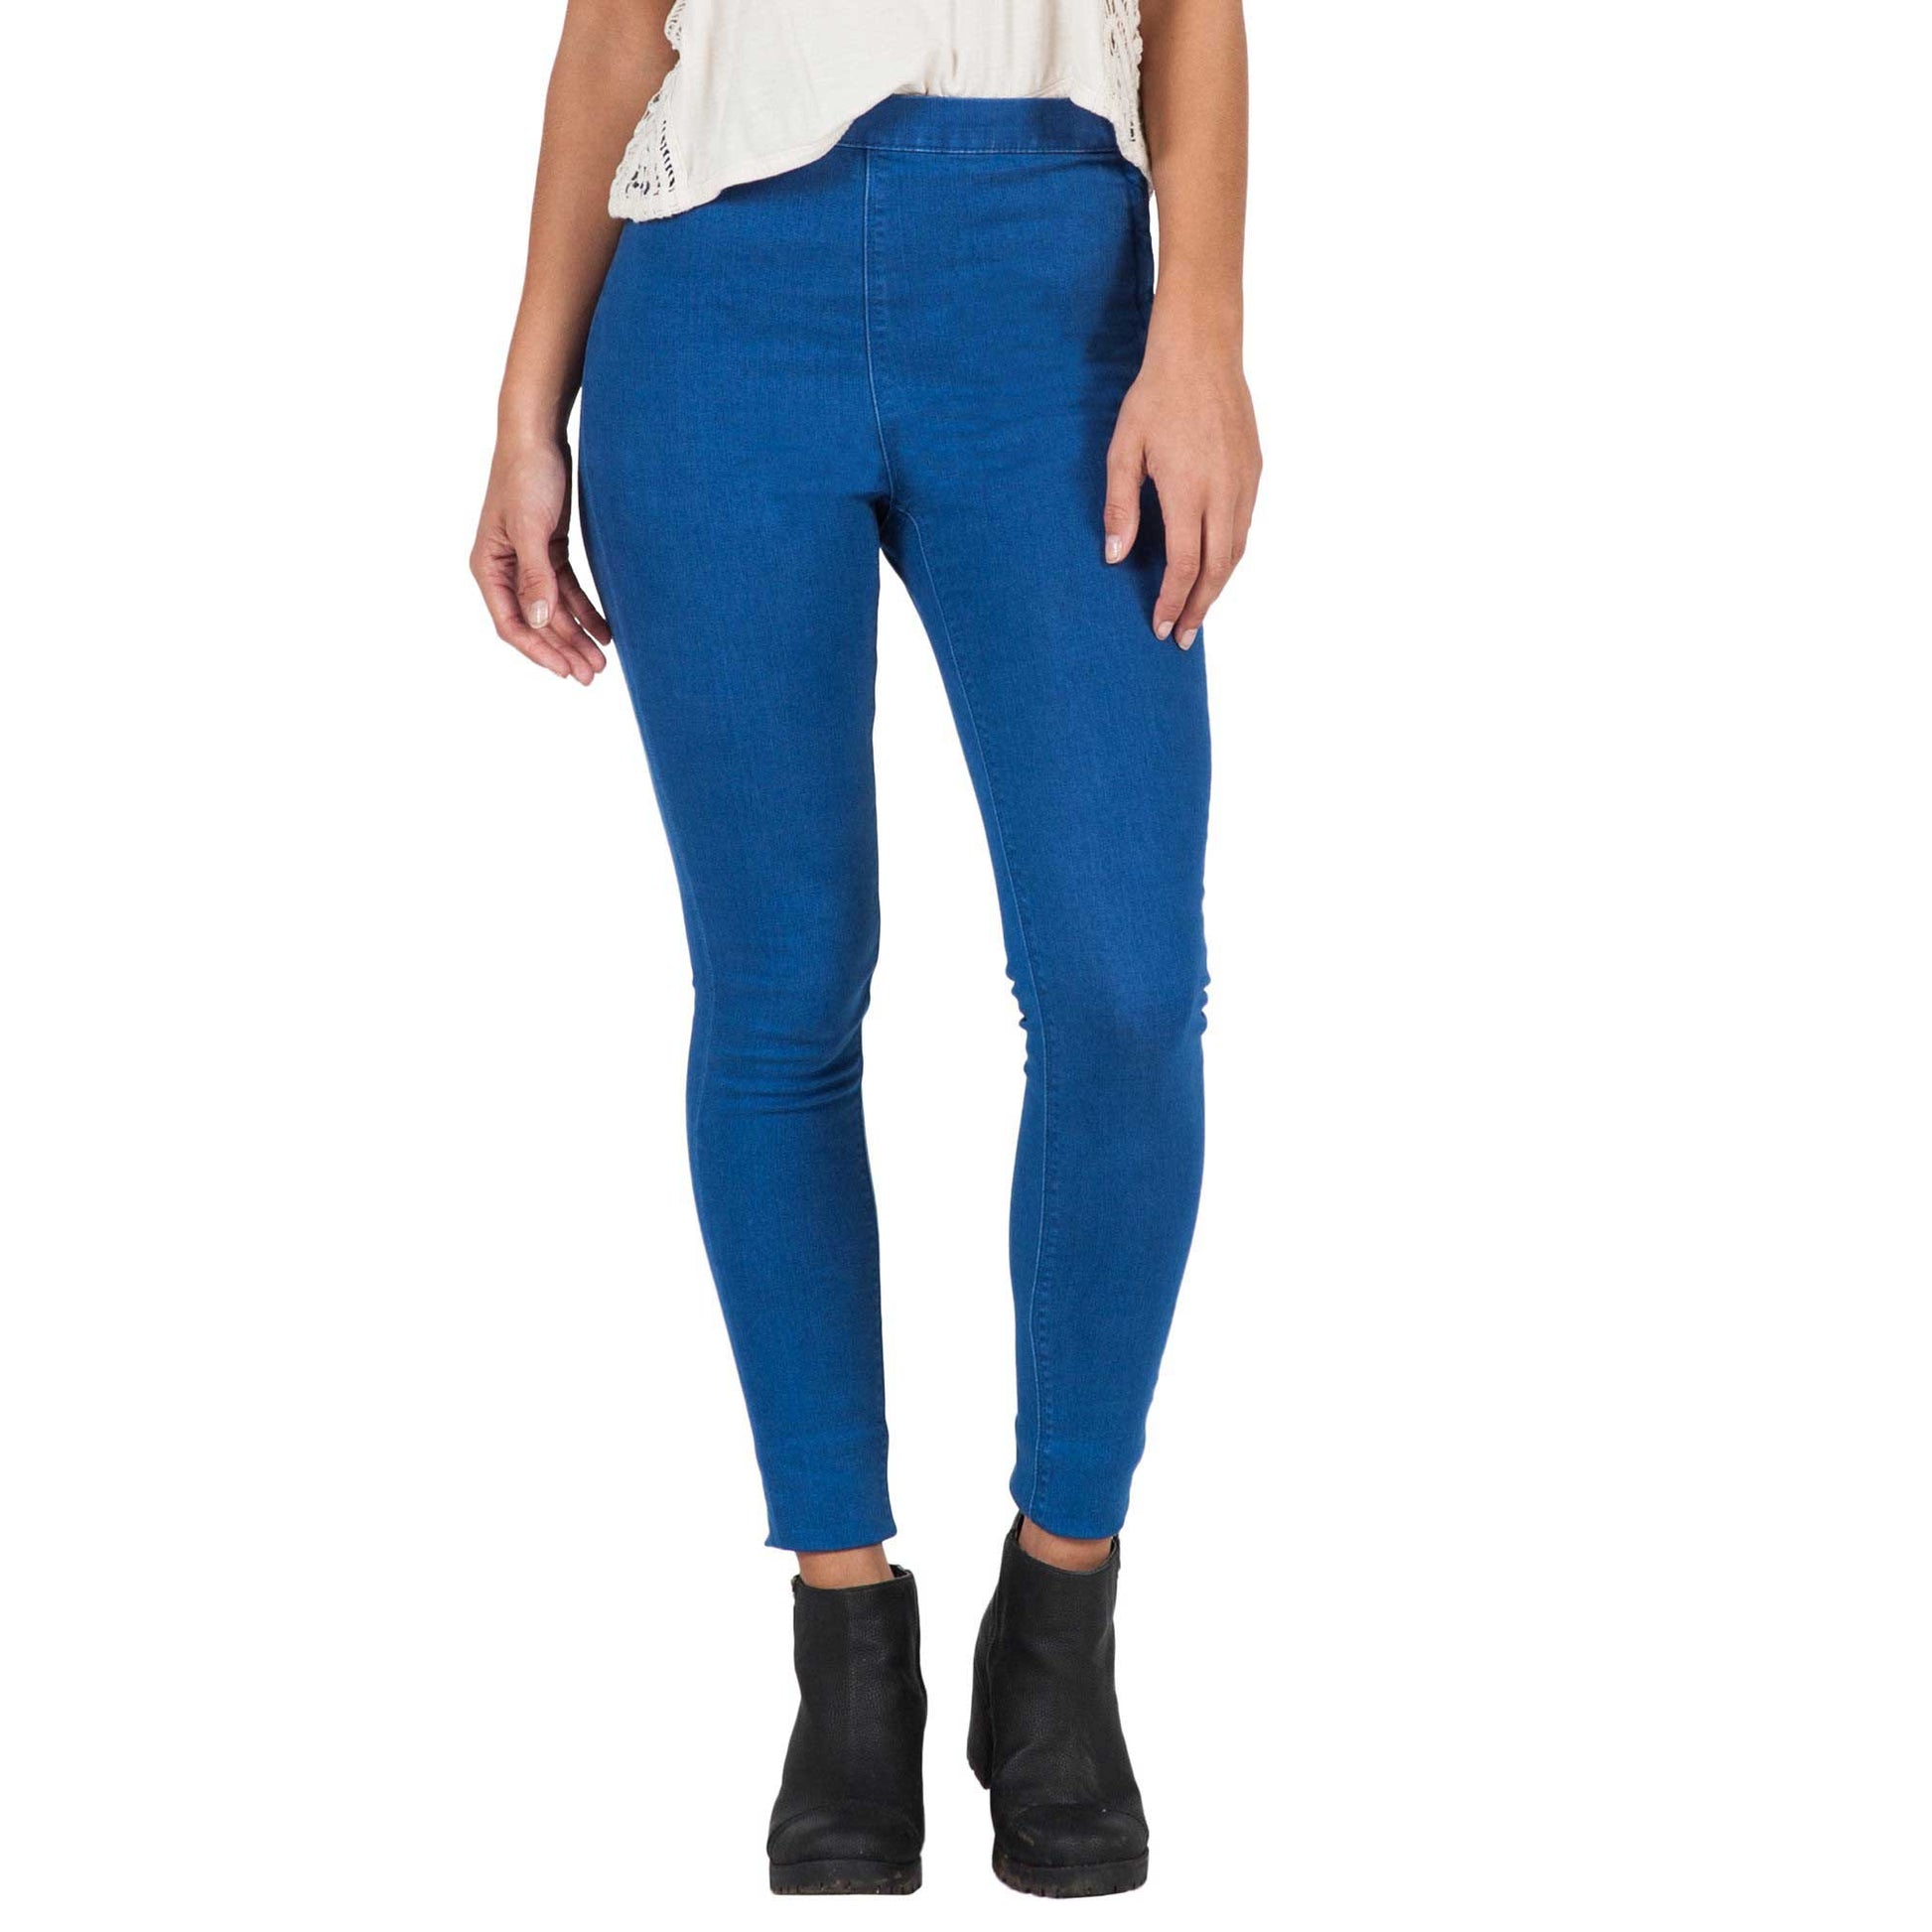 Volcom High Waisted Legging Blue Stretch | Mujer Pantalones | Volcom Shop | surfdevils.com